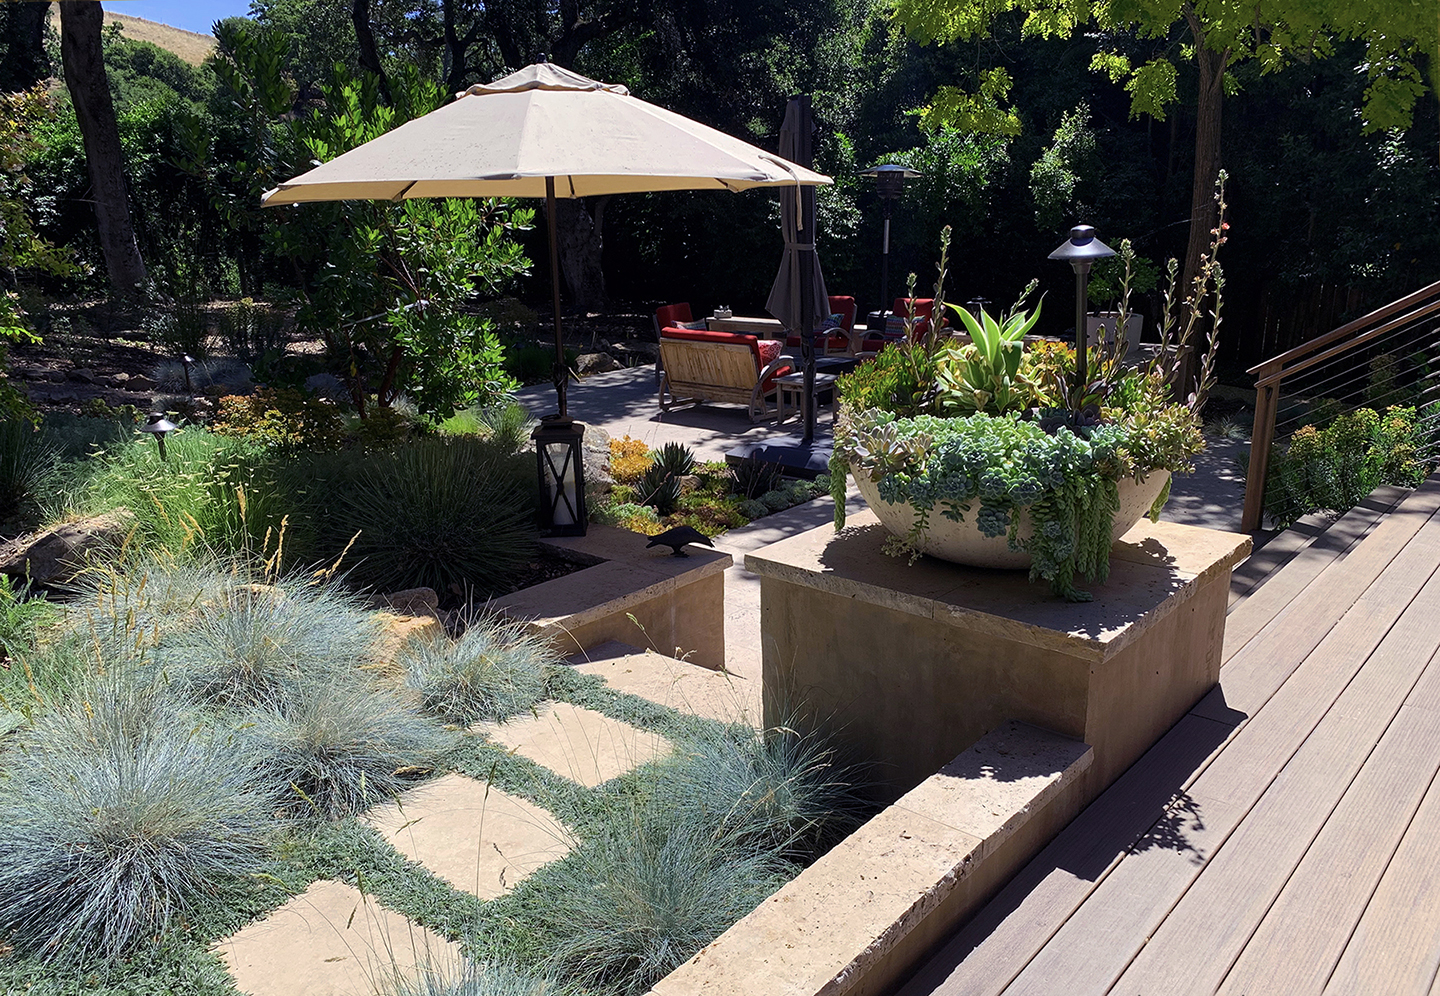 Dig Your Garden Landscape Design Home, Gardening And Landscaping Award 2021